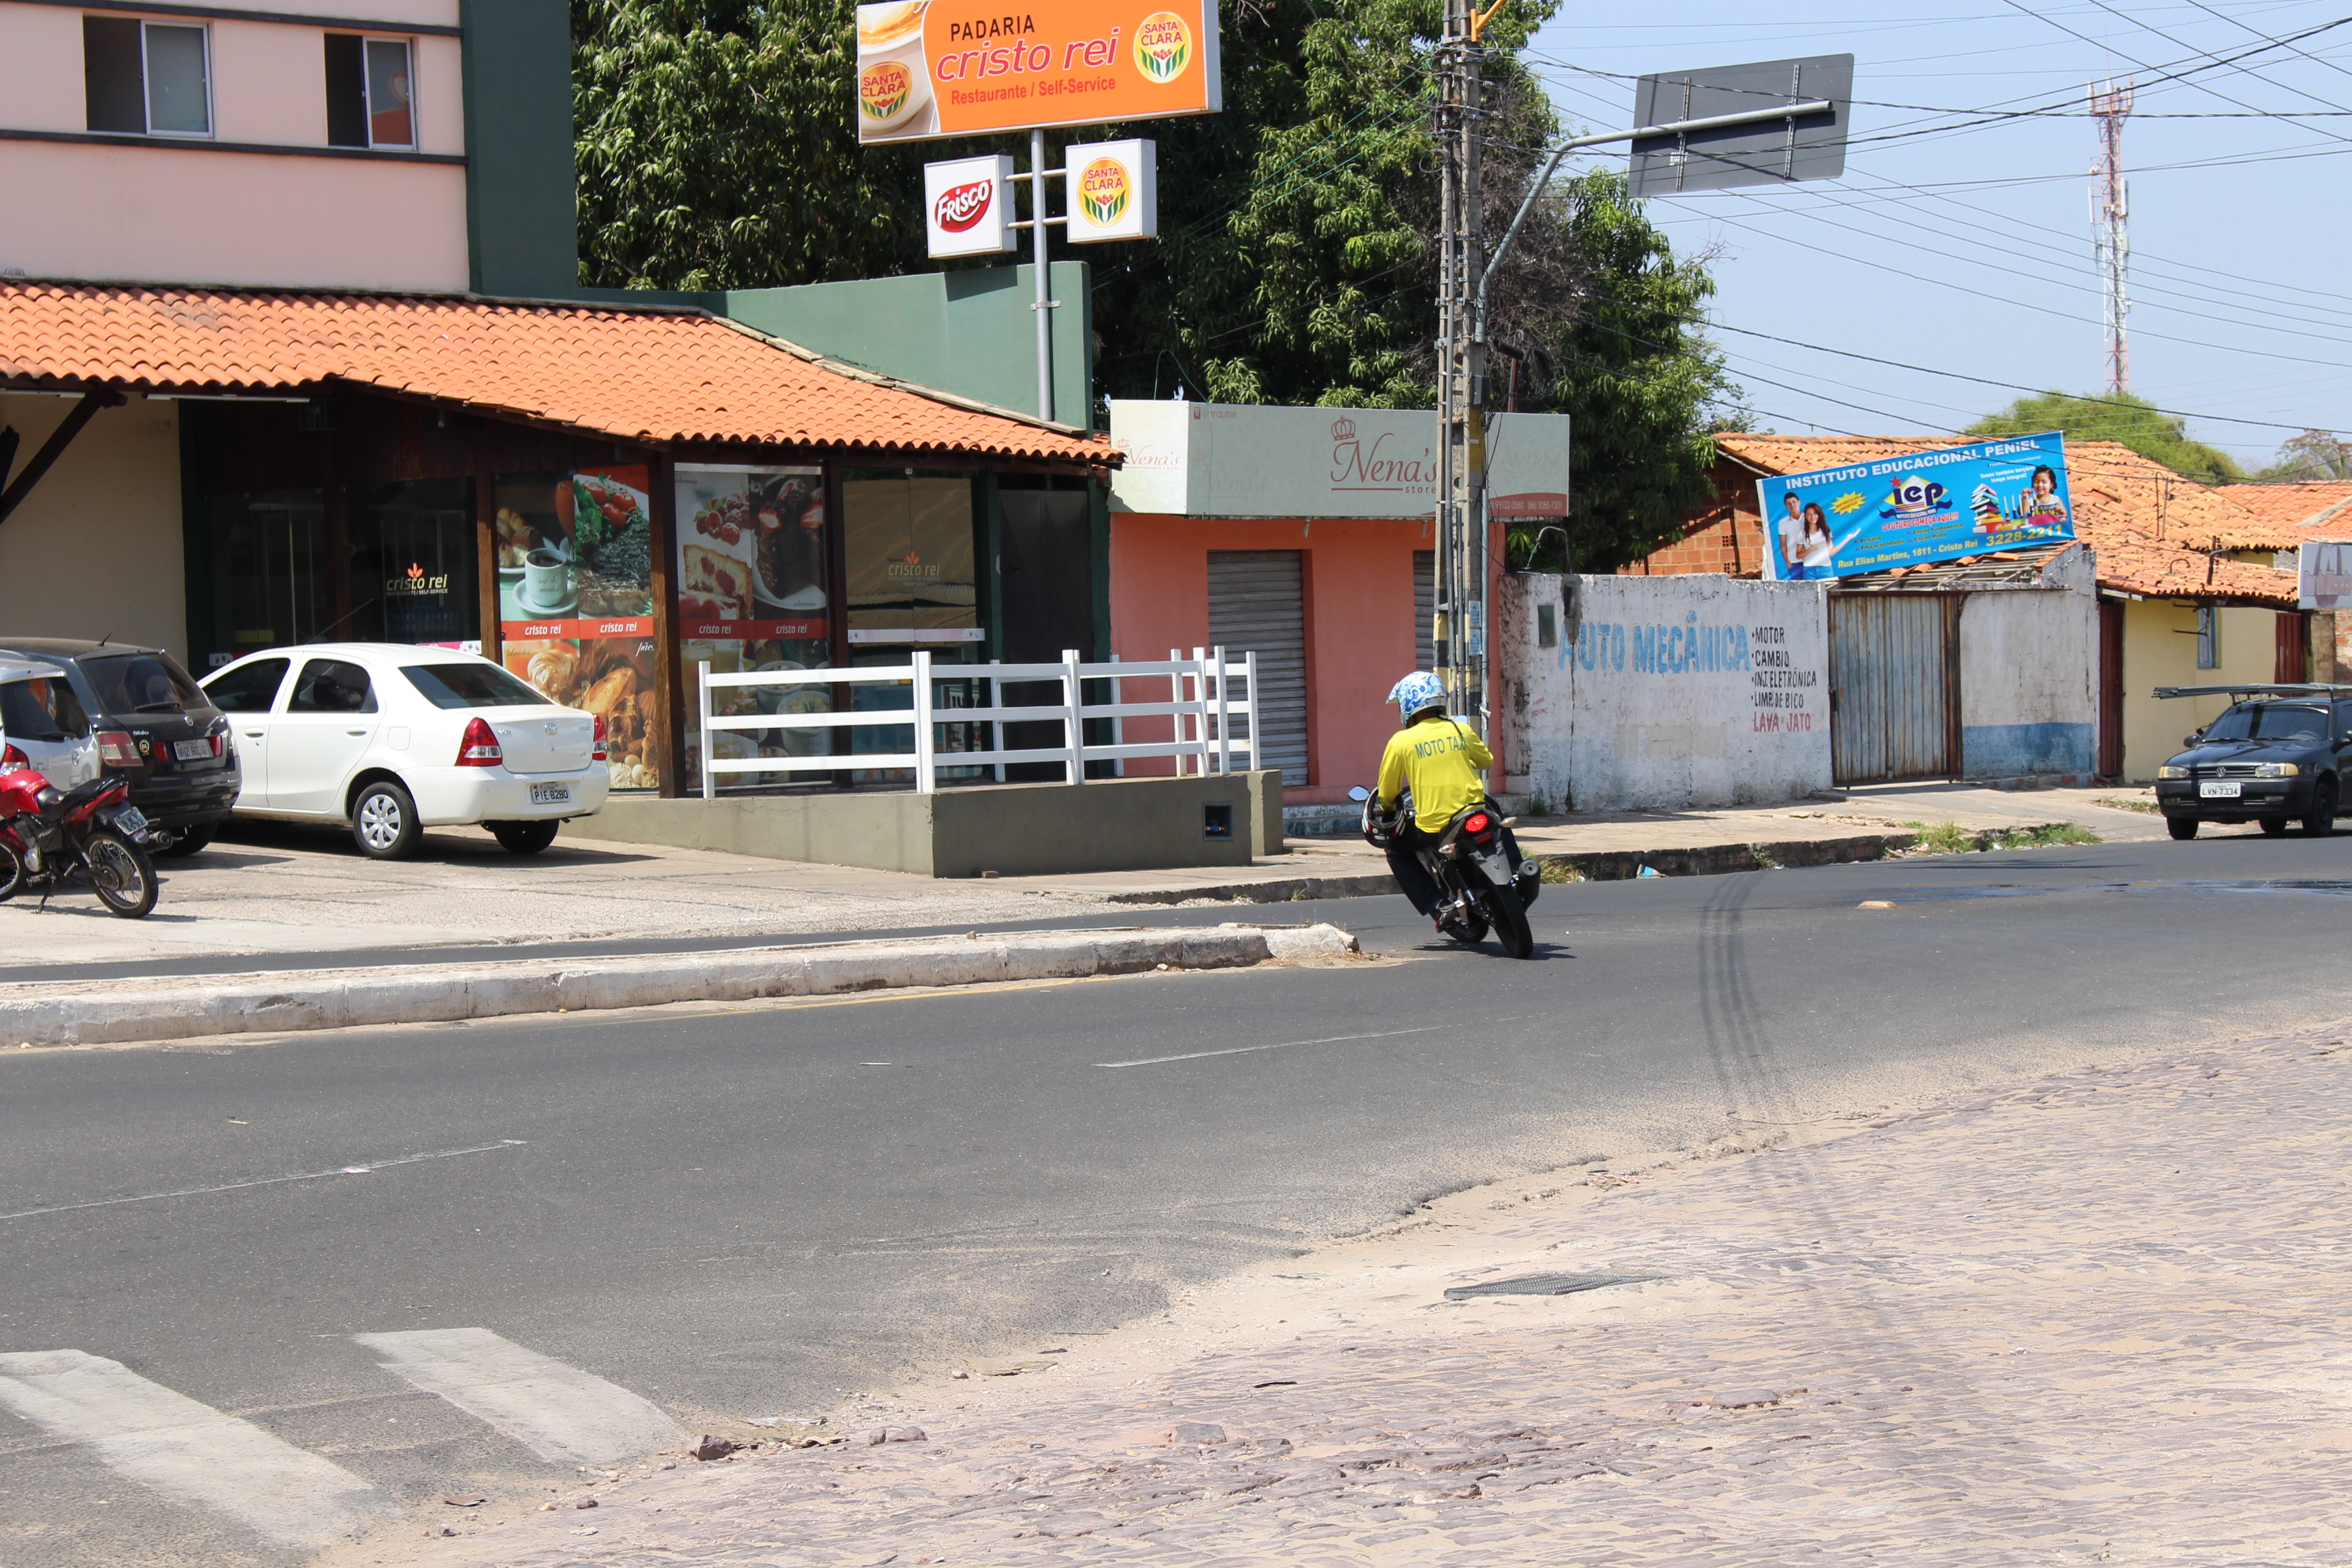 Motoristas fazem retorno ilegal por falta de vias de acesso facilitada na Av. São Raimundo